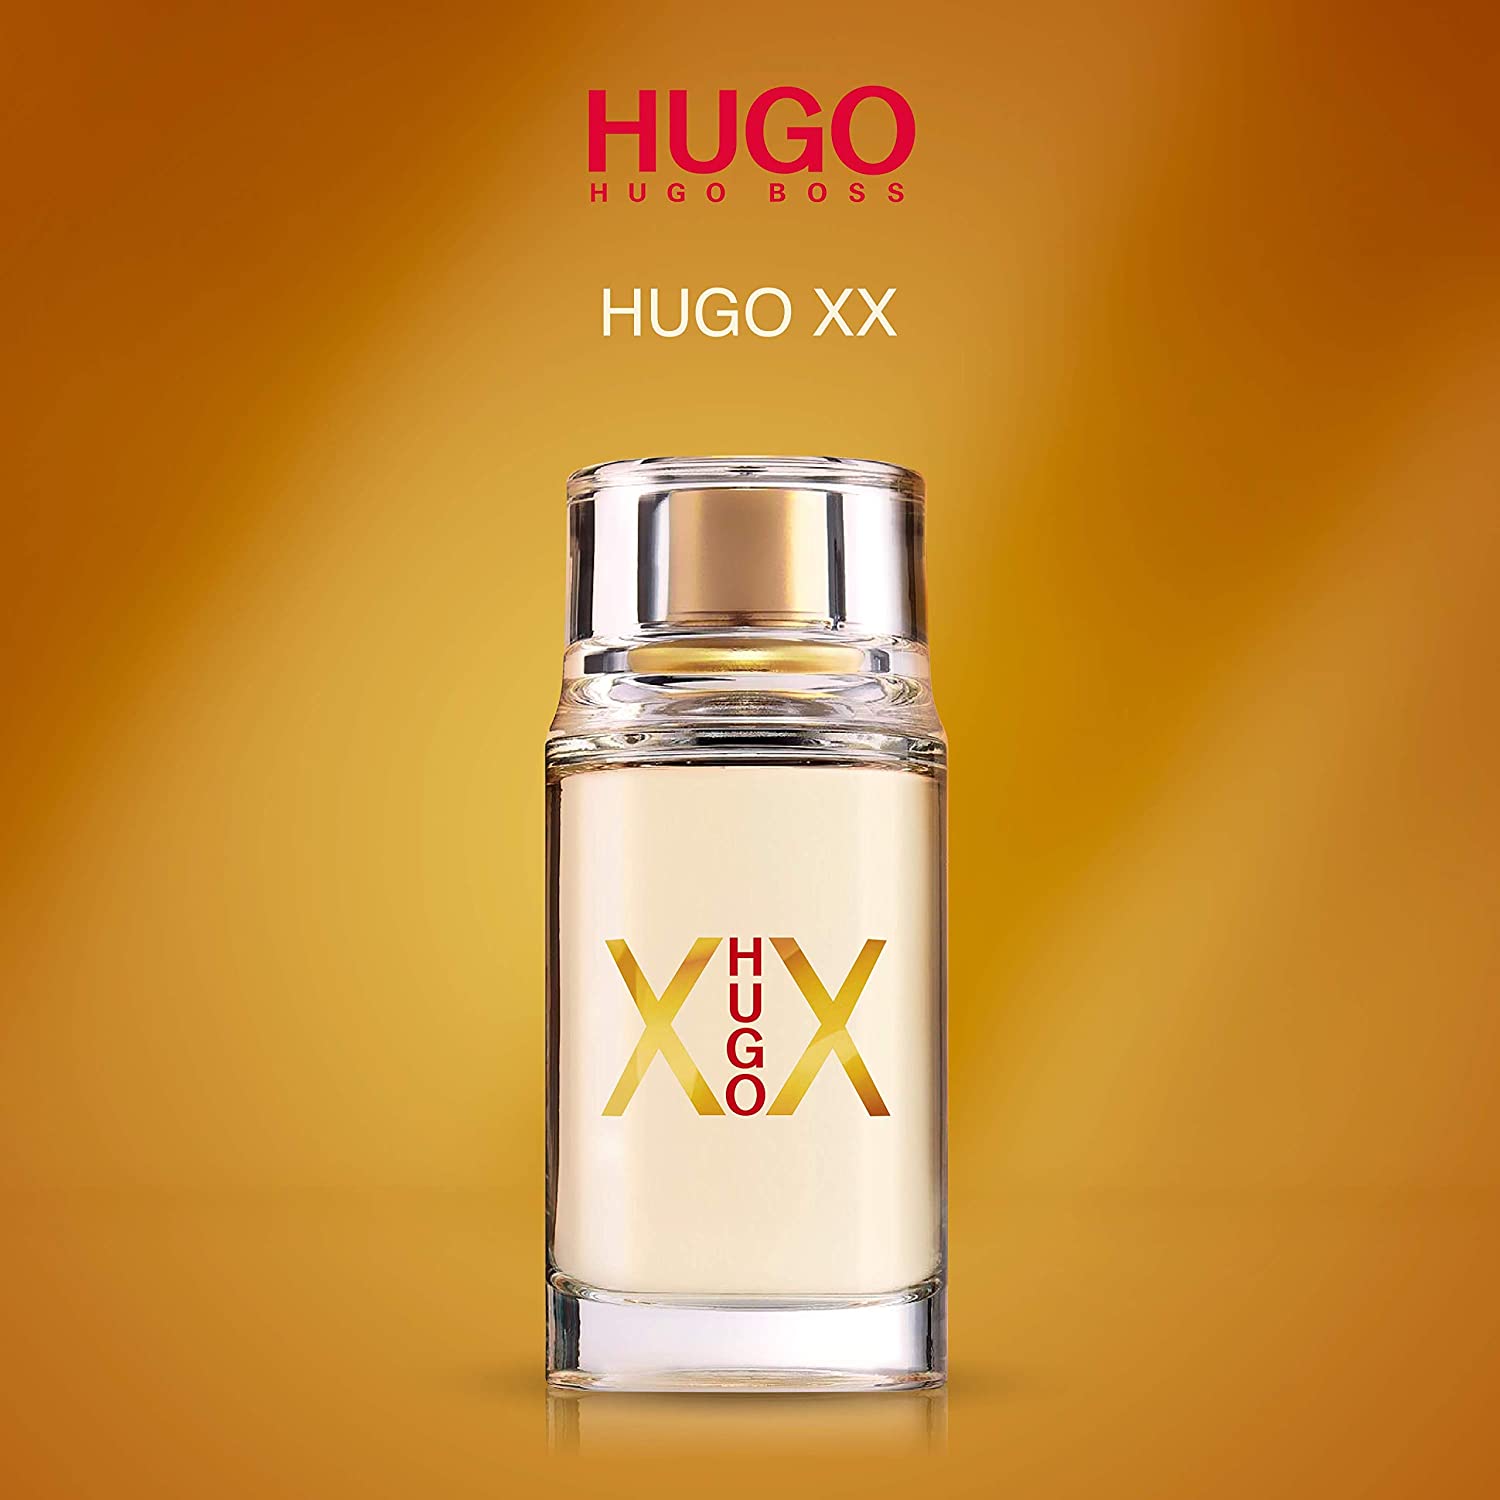 hugo xx